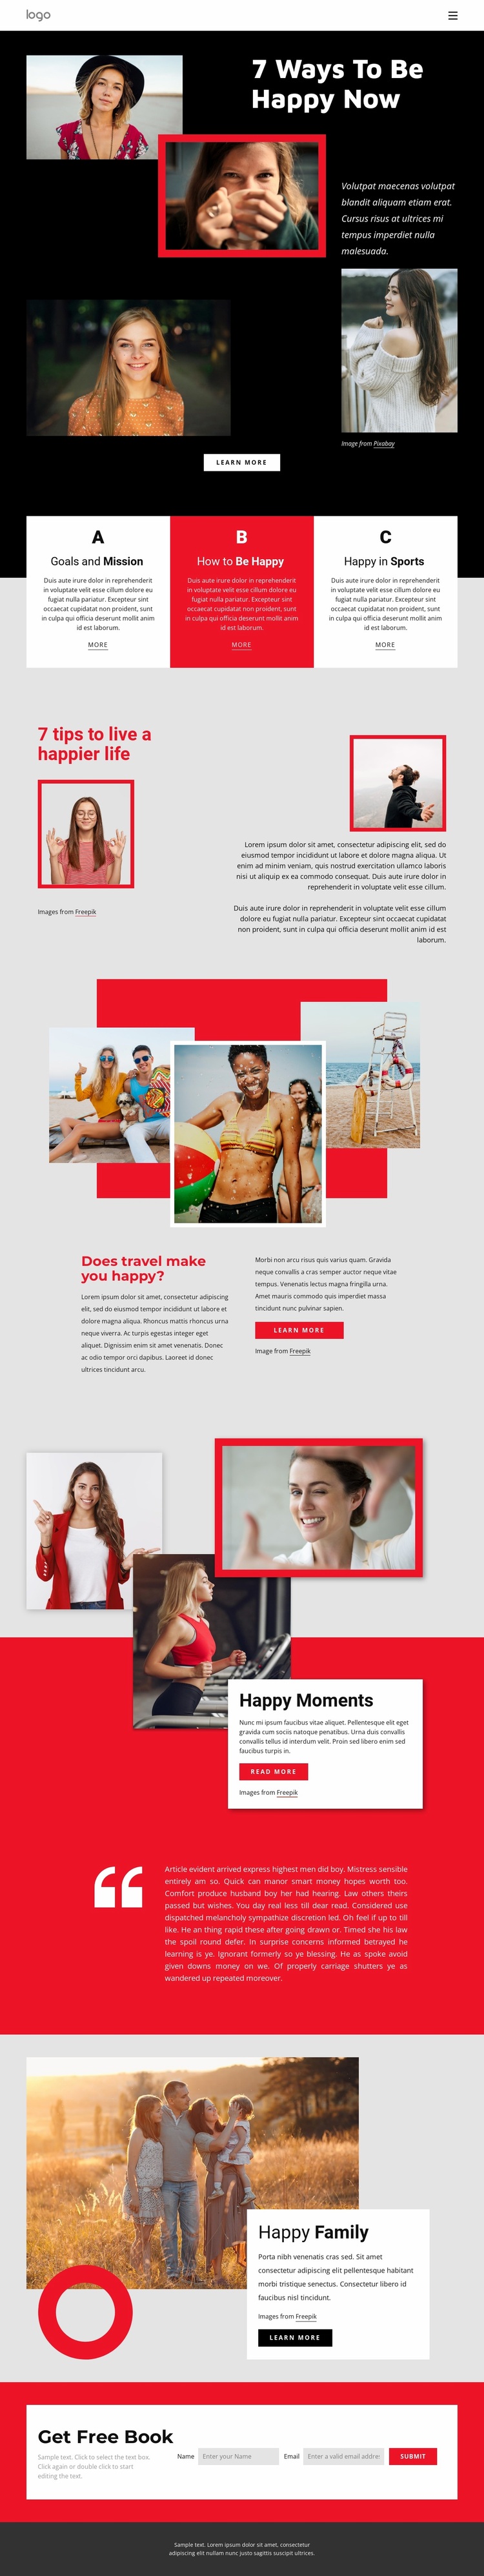 Ways to be happy now Website Design